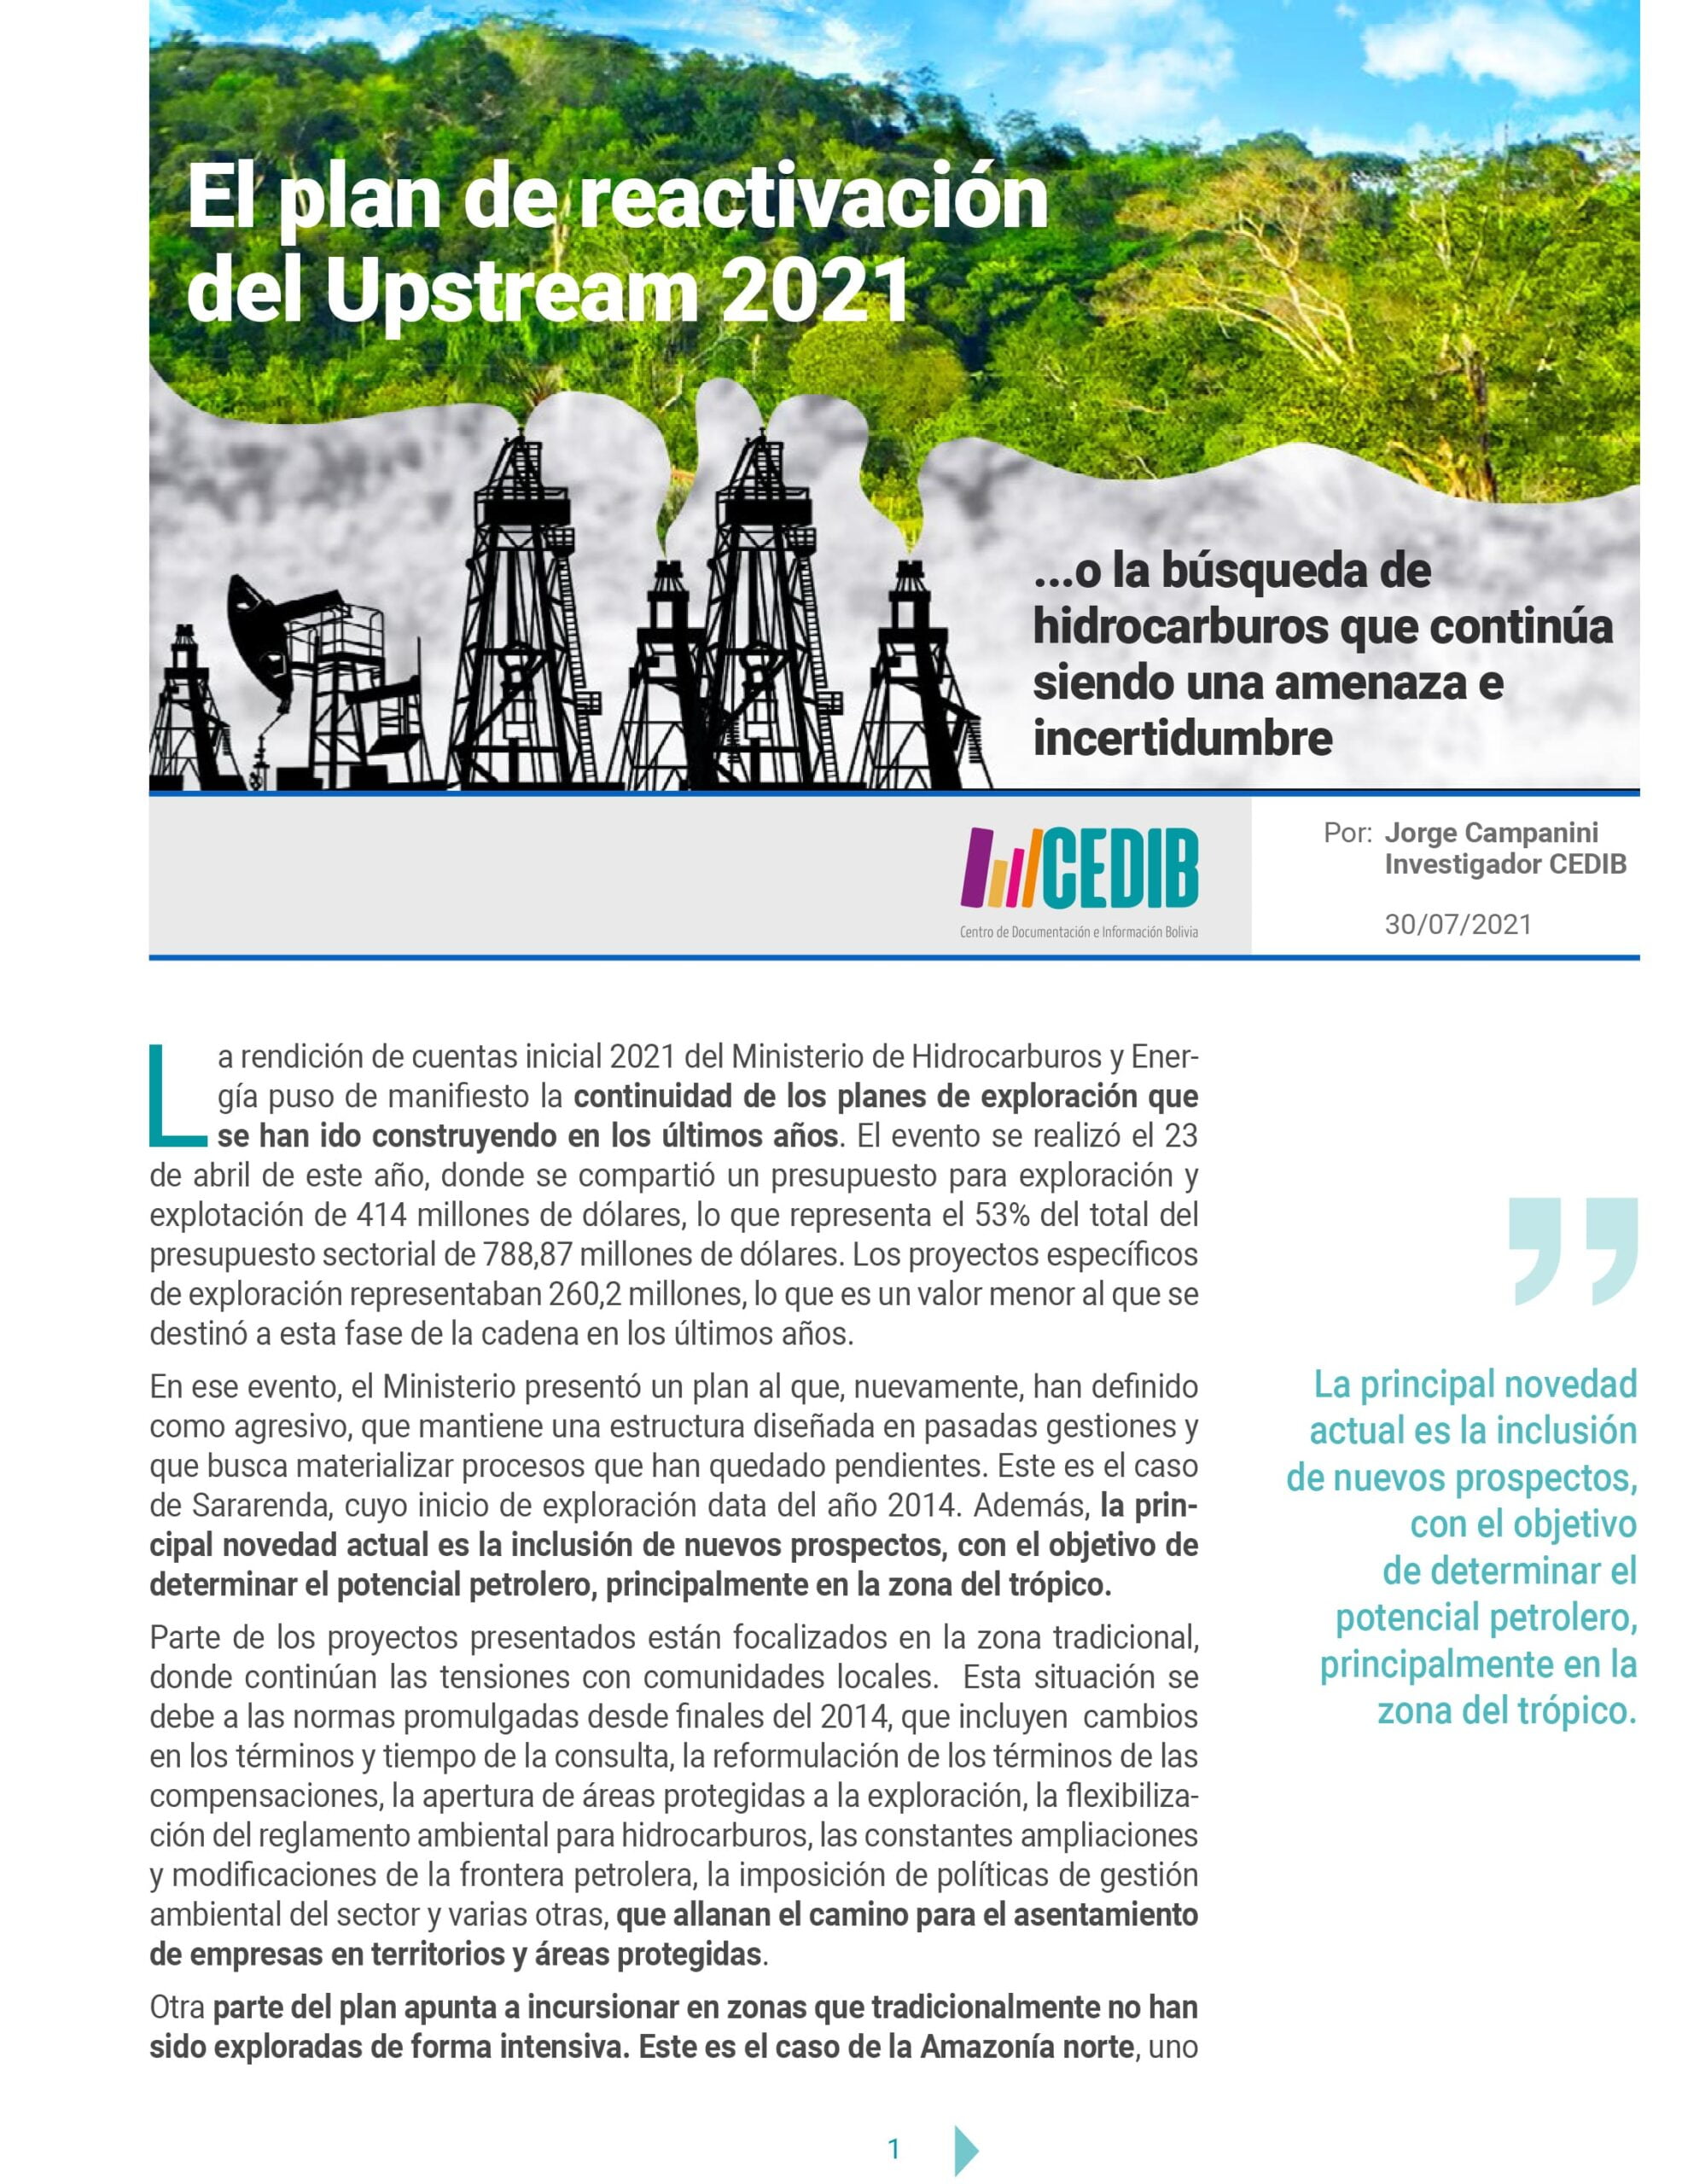 El plan de reactivación del Upstream 2021 o la búsqueda de hidrocarburos que continúa siendo una amenaza e incertidumbre